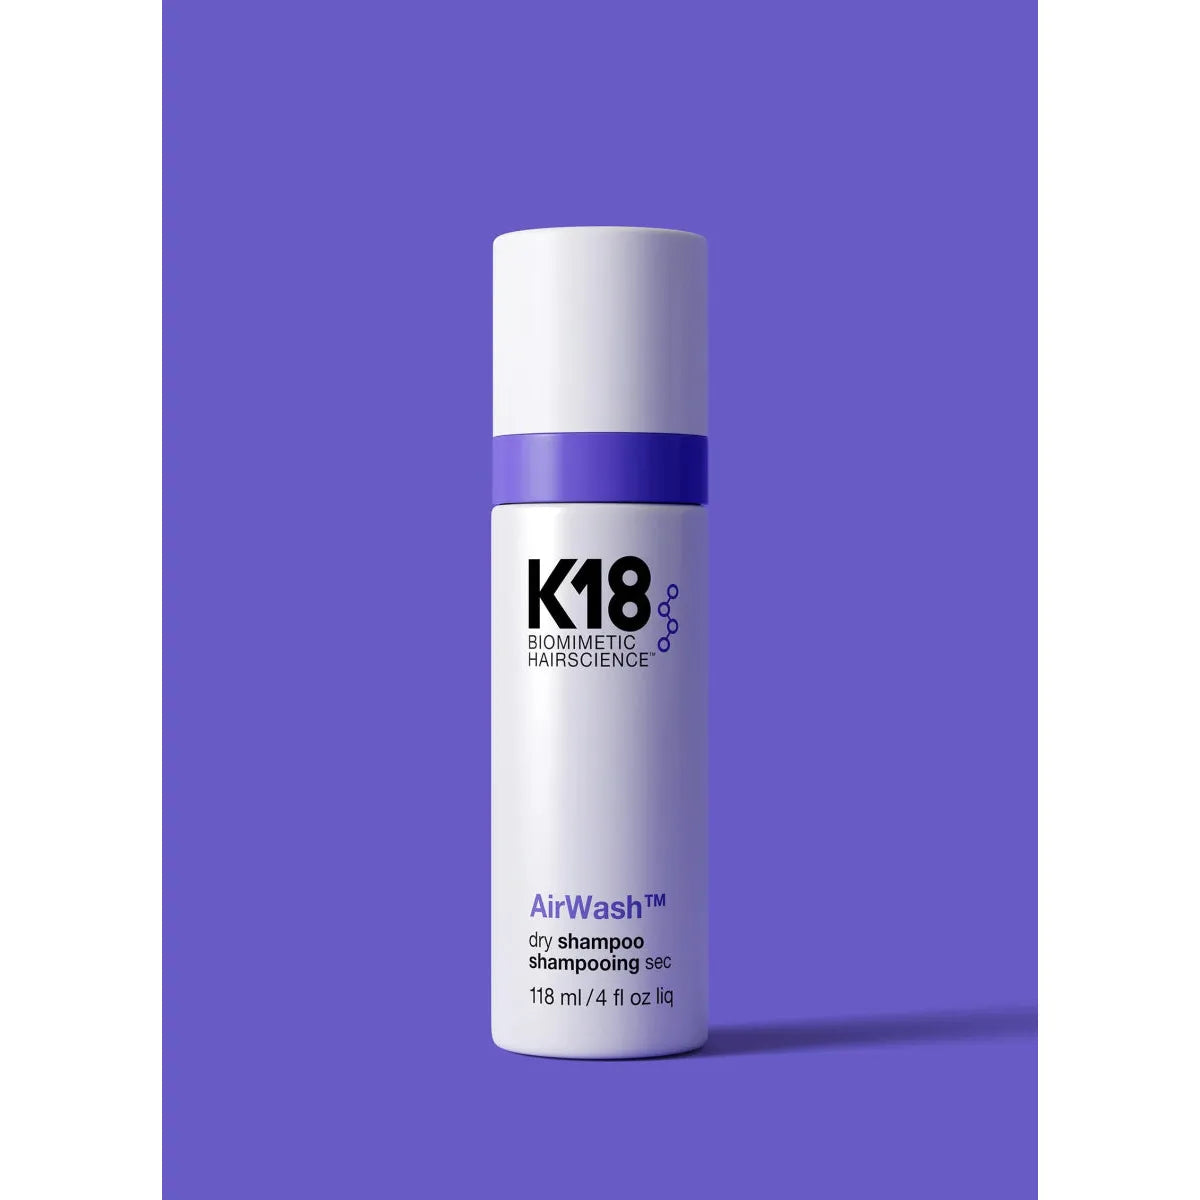 K18 AirWash Dry Shampoo - 118ml - Glam Global UK